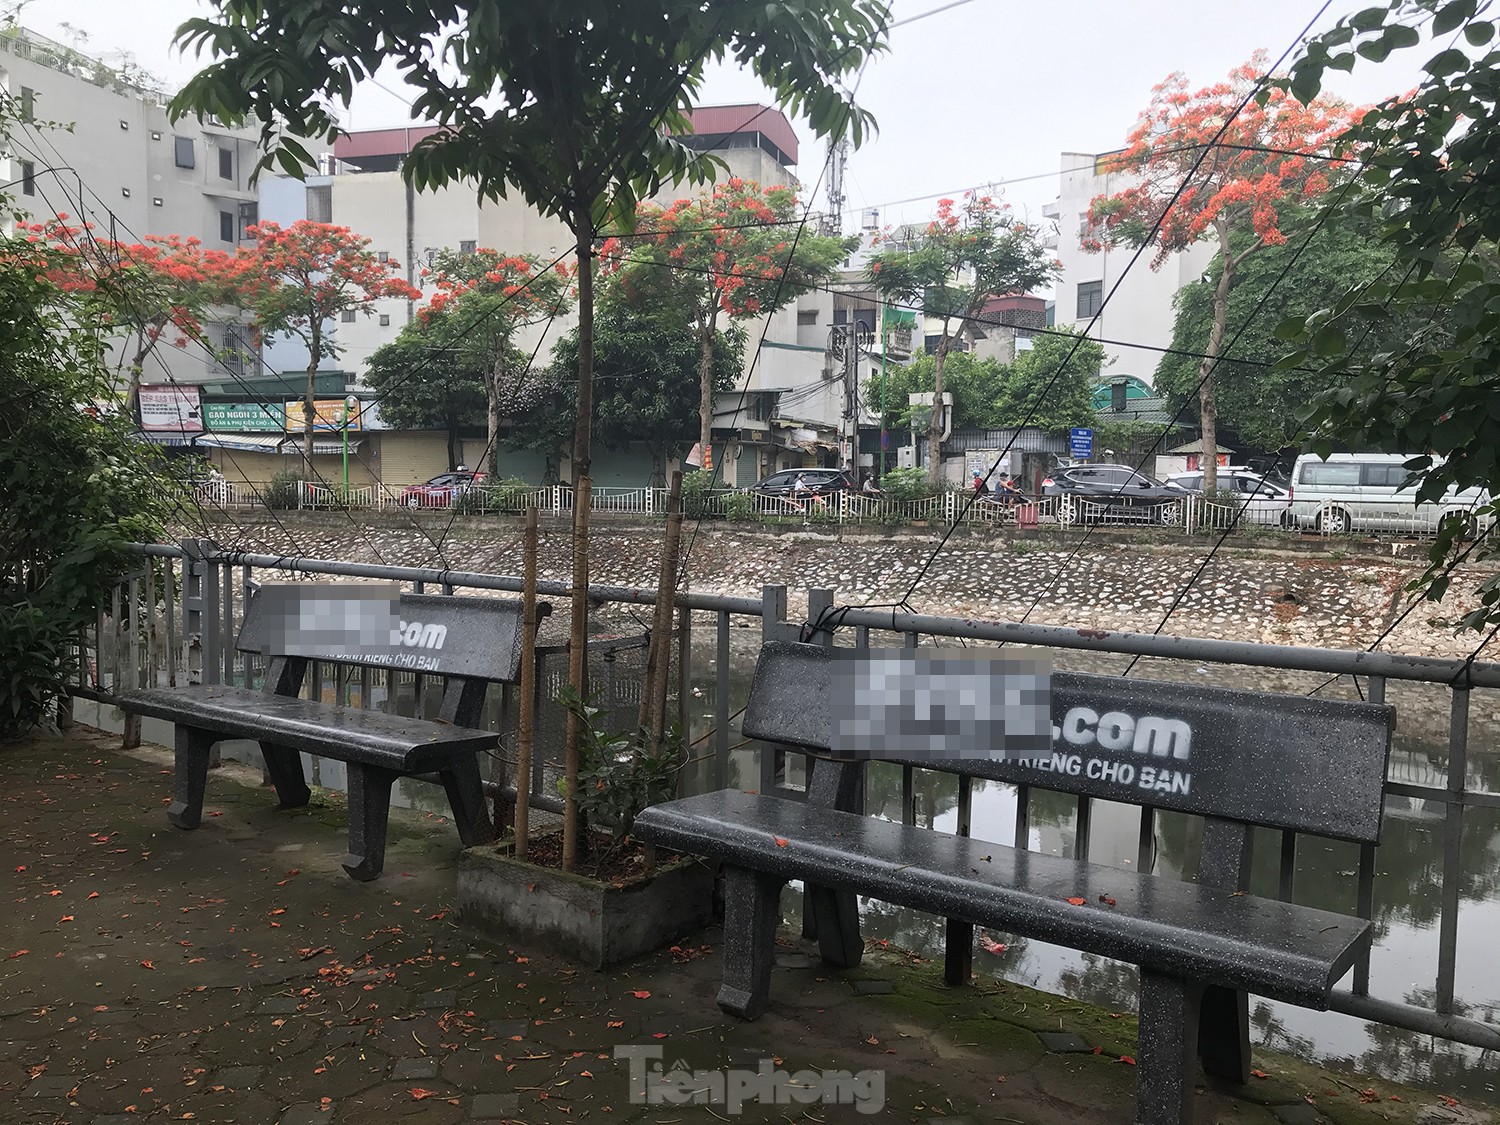 Loạt ghế đá ven sông ở Hà Nội bị sơn tên web cờ bạc ảnh 4